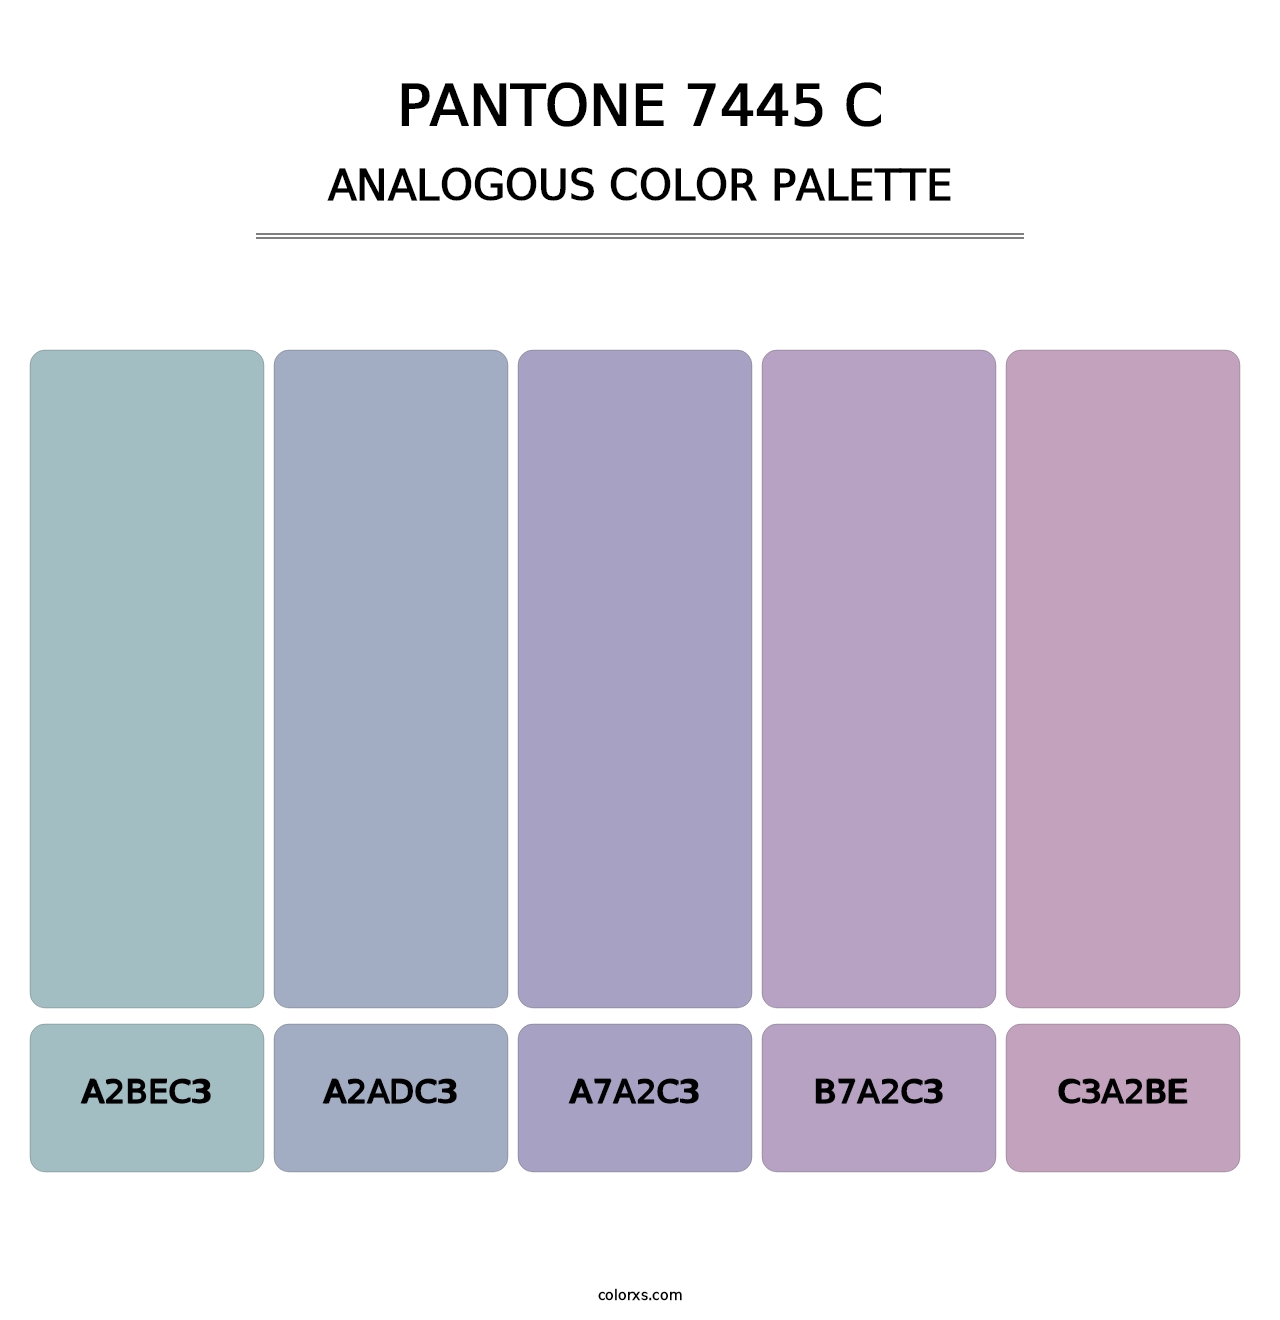 PANTONE 7445 C - Analogous Color Palette